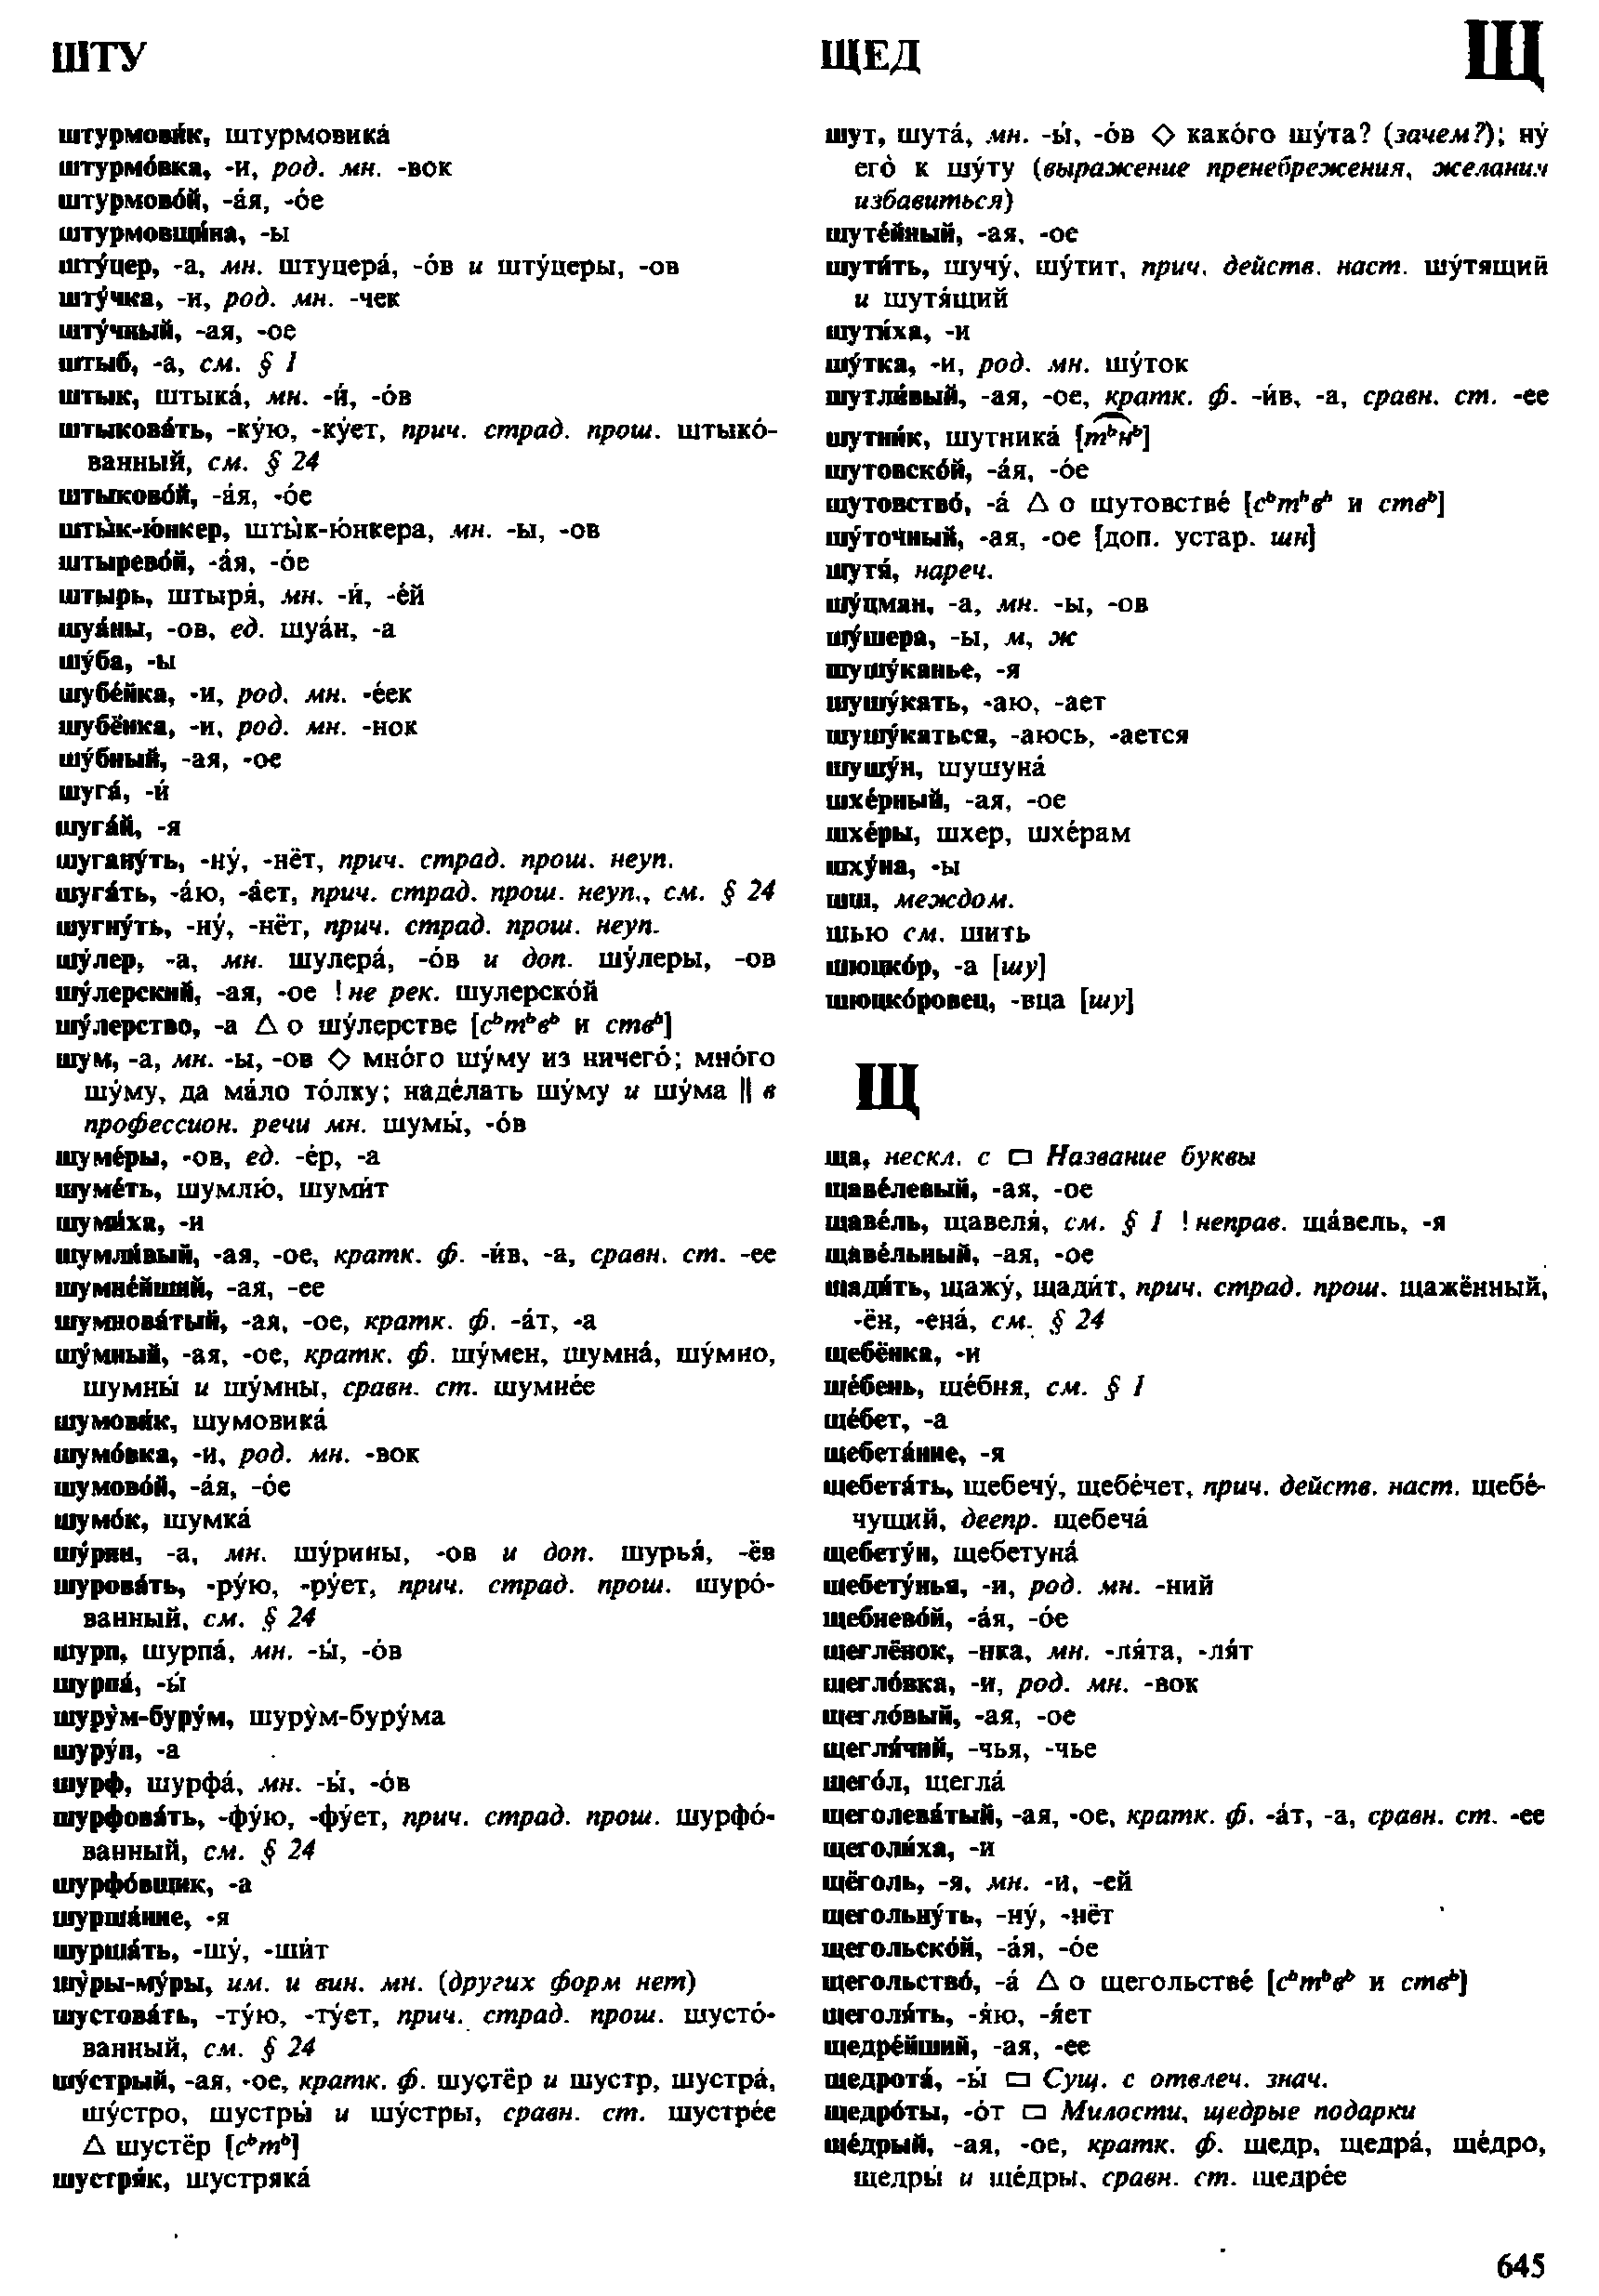 Фотокопия pdf / скан страницы 645 орфоэпического словаря под редакцией Аванесова (4 издание, 1988 год)